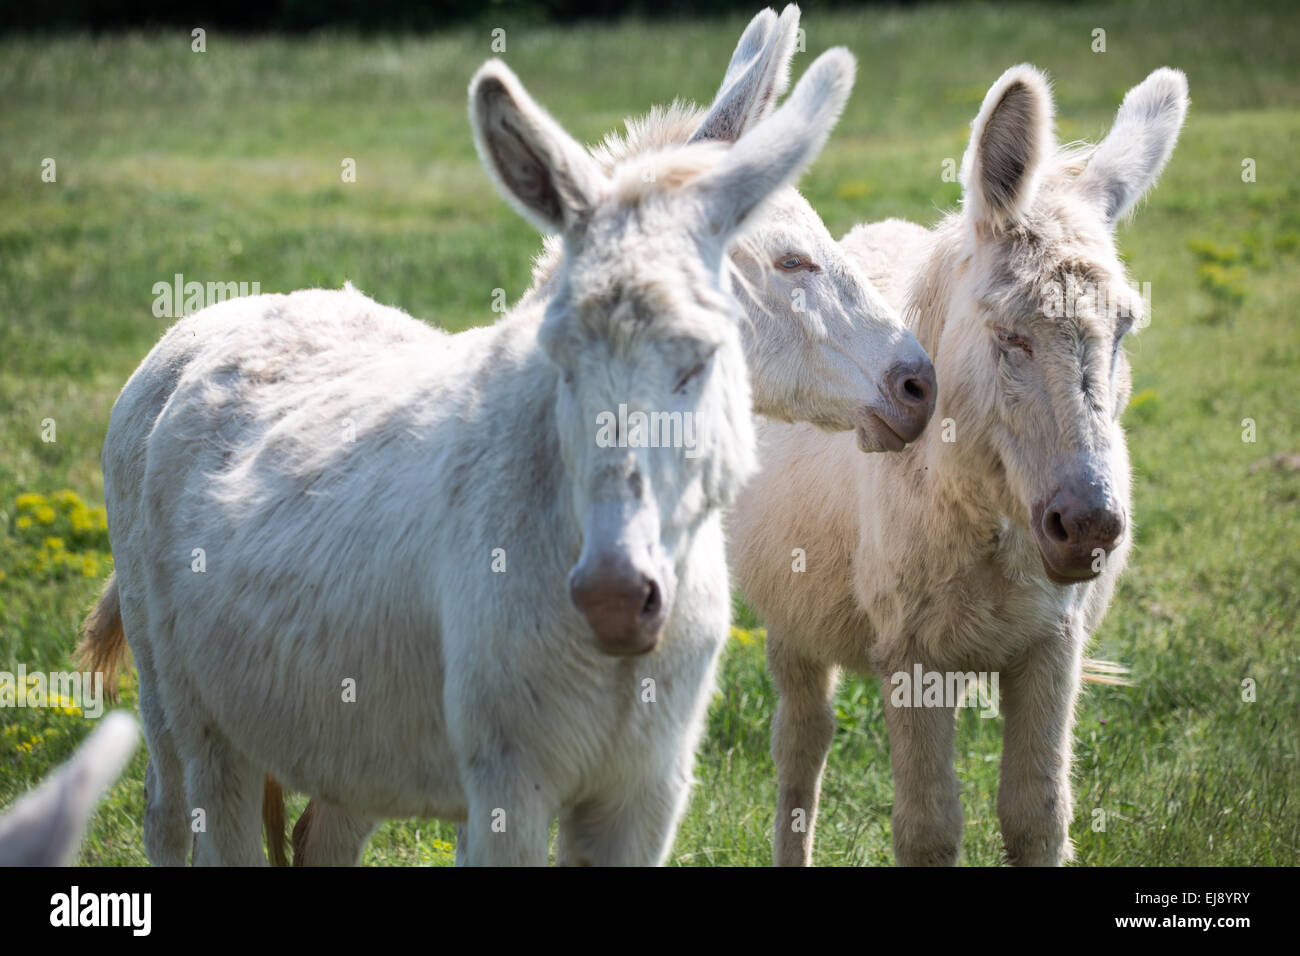 White donkey Stock Photo